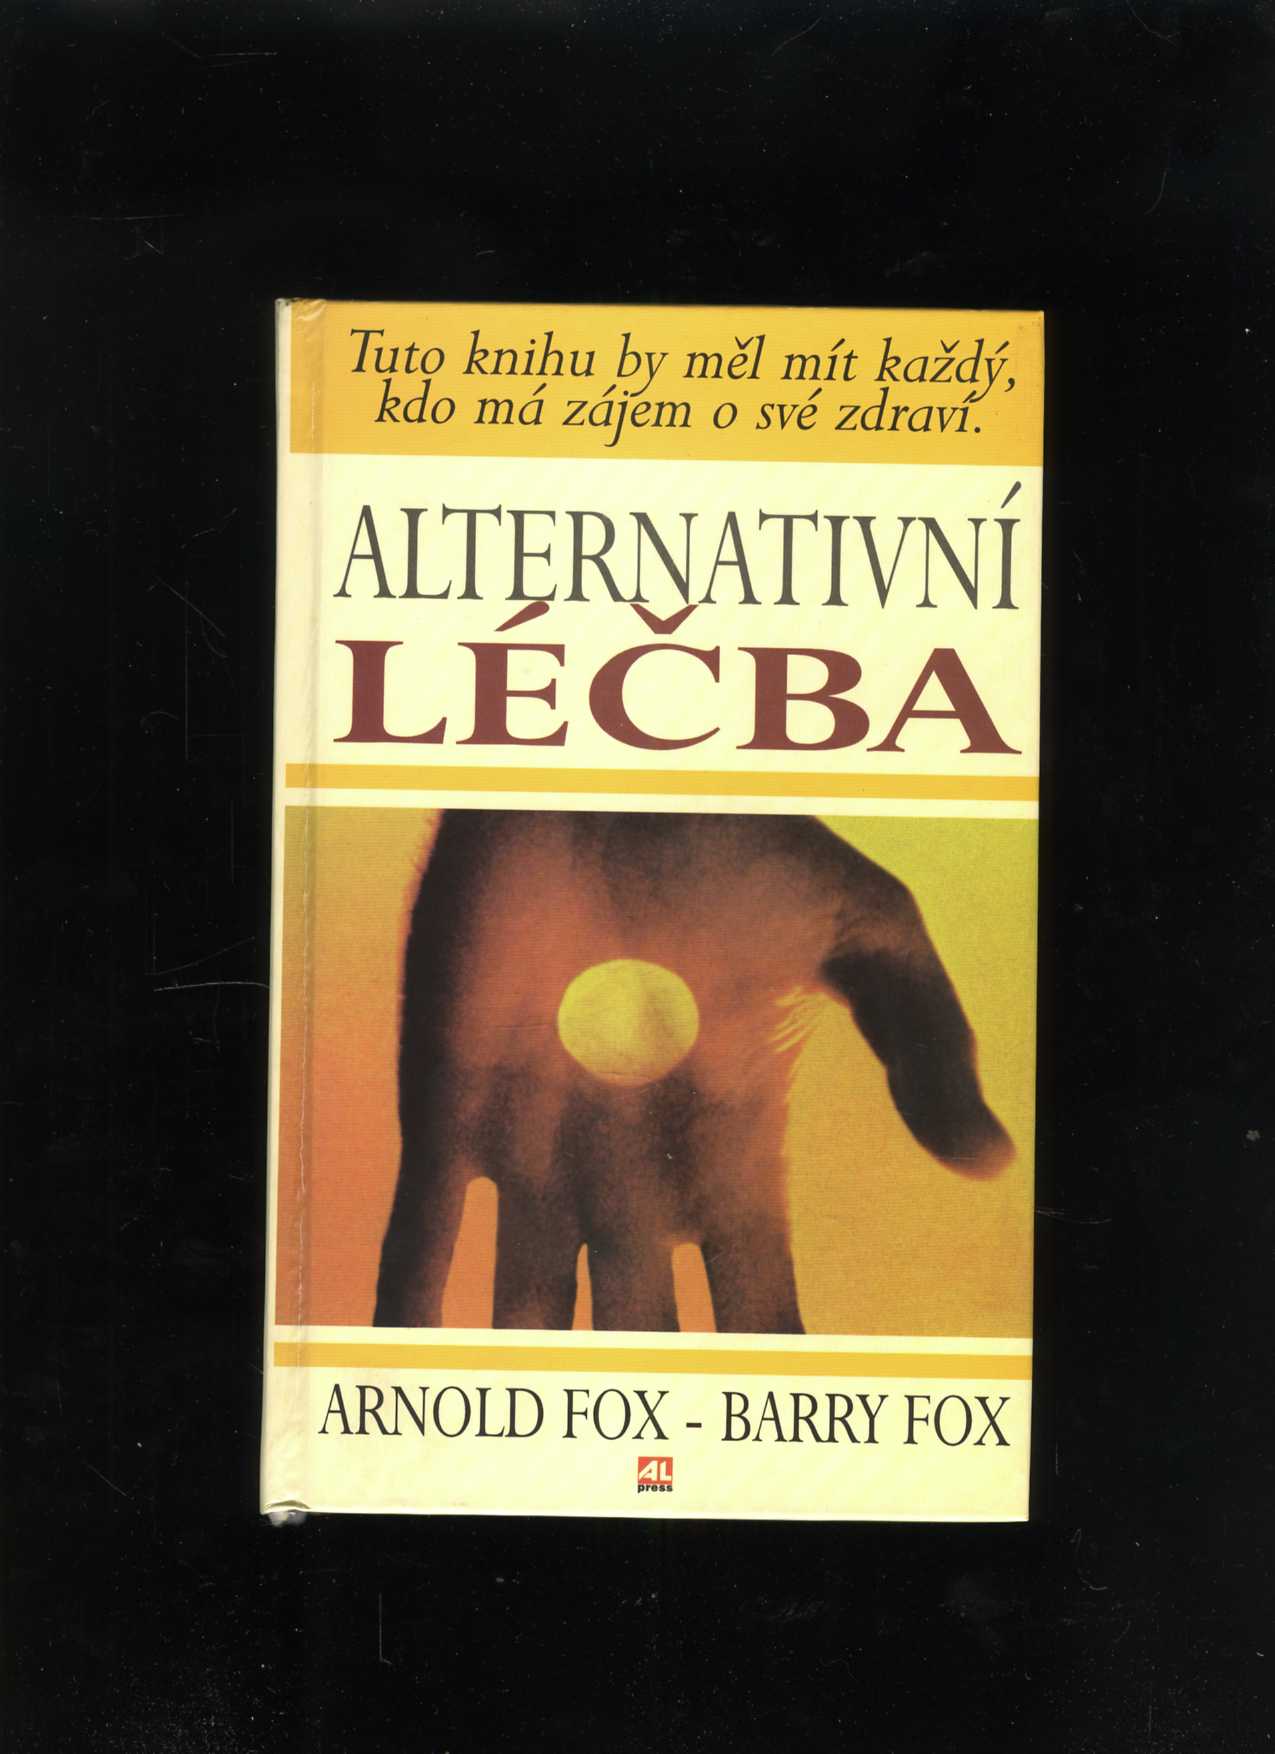 Alternativní léčba (Arnold Fox, Barry Fox)